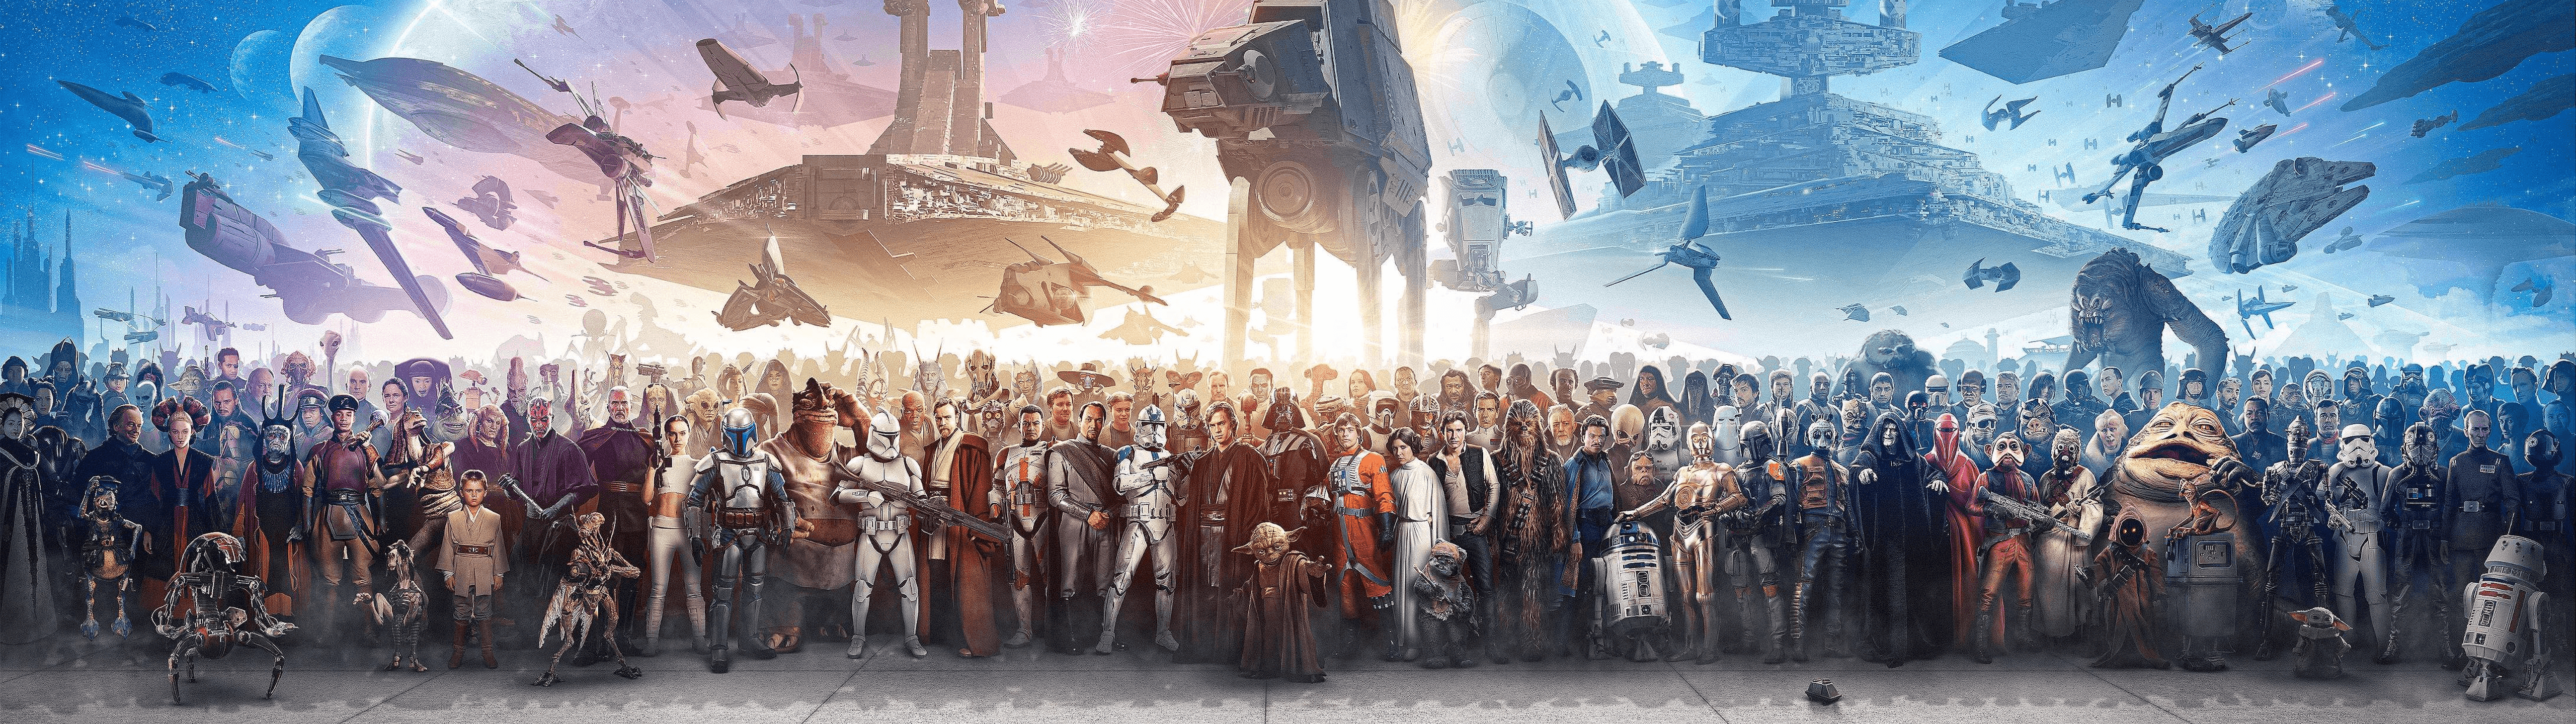 Hình nền Star Wars 5120x1440 Wallpaper có độ phân giải cao chưa từng thấy sẽ khiến bạn cảm nhận được sức mạnh của chiếc phi thuyền du hành vũ trụ và sự hùng mạnh của các nhân vật trong phim. Đừng bỏ lỡ cơ hội được chiêm ngưỡng bức tranh hoành tráng này.